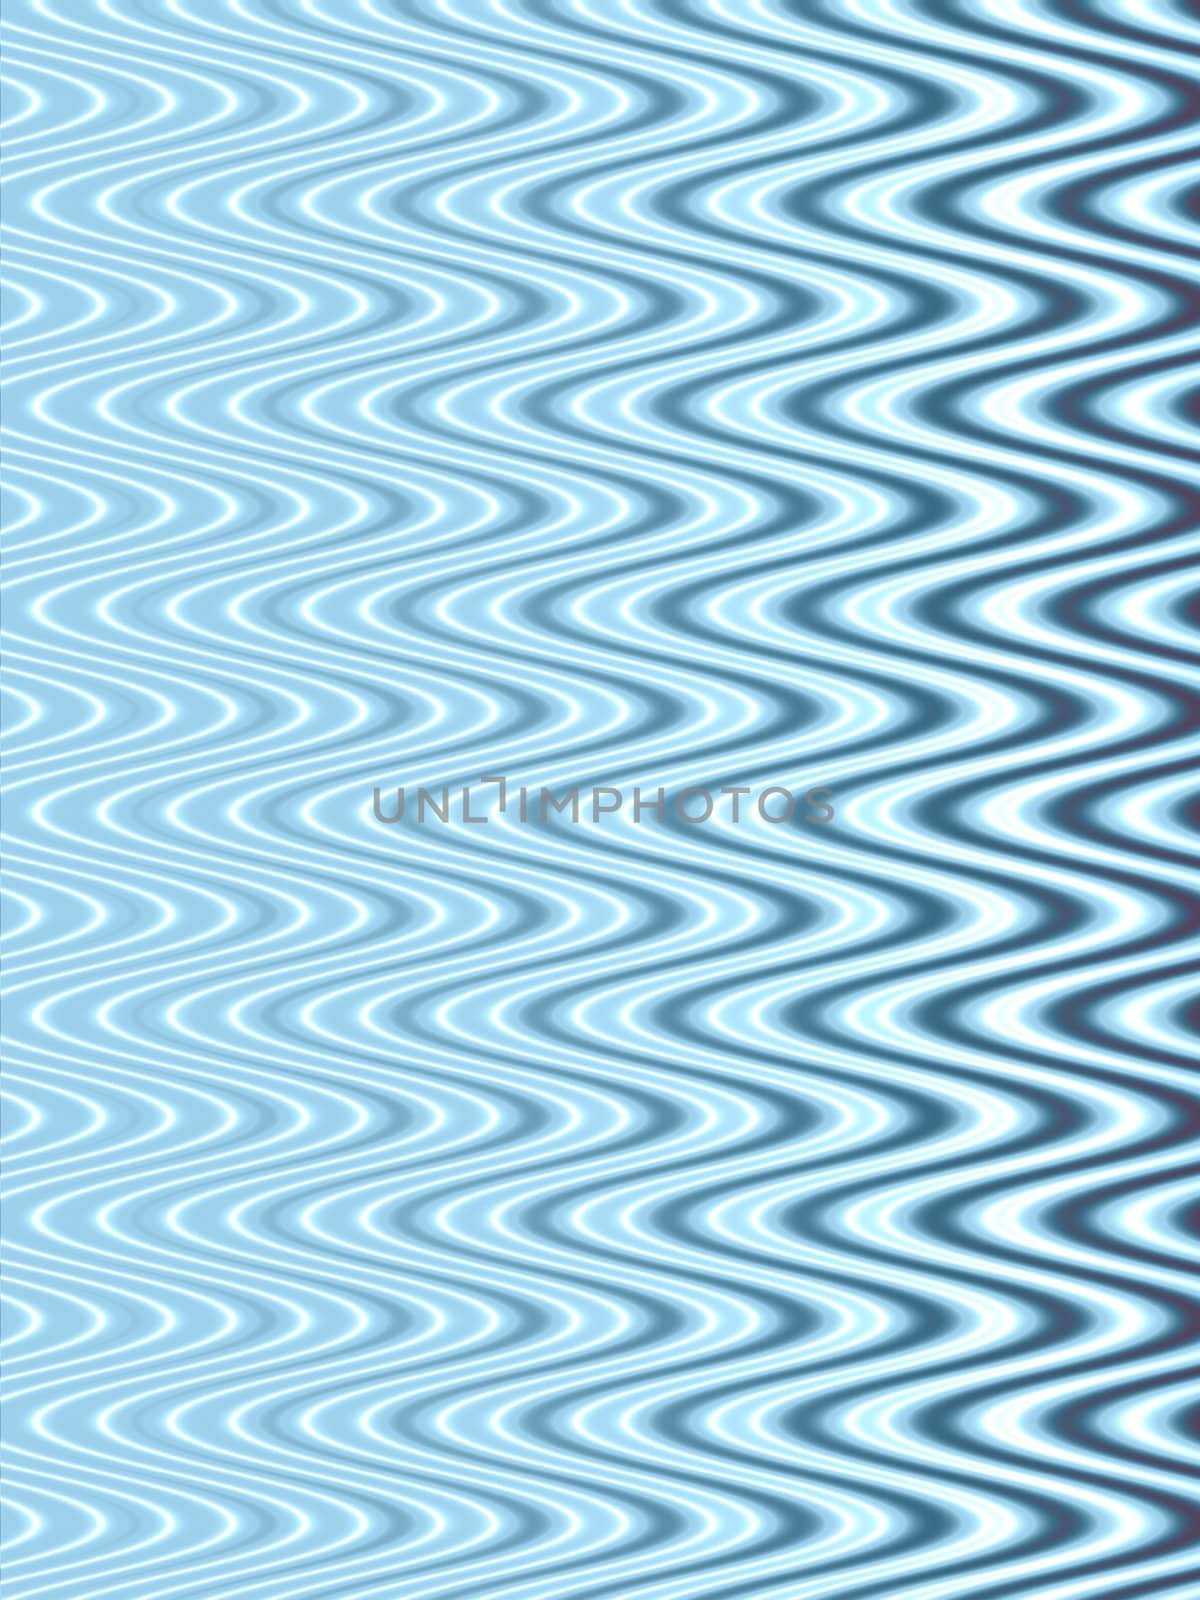 blue swirls pattern / texture